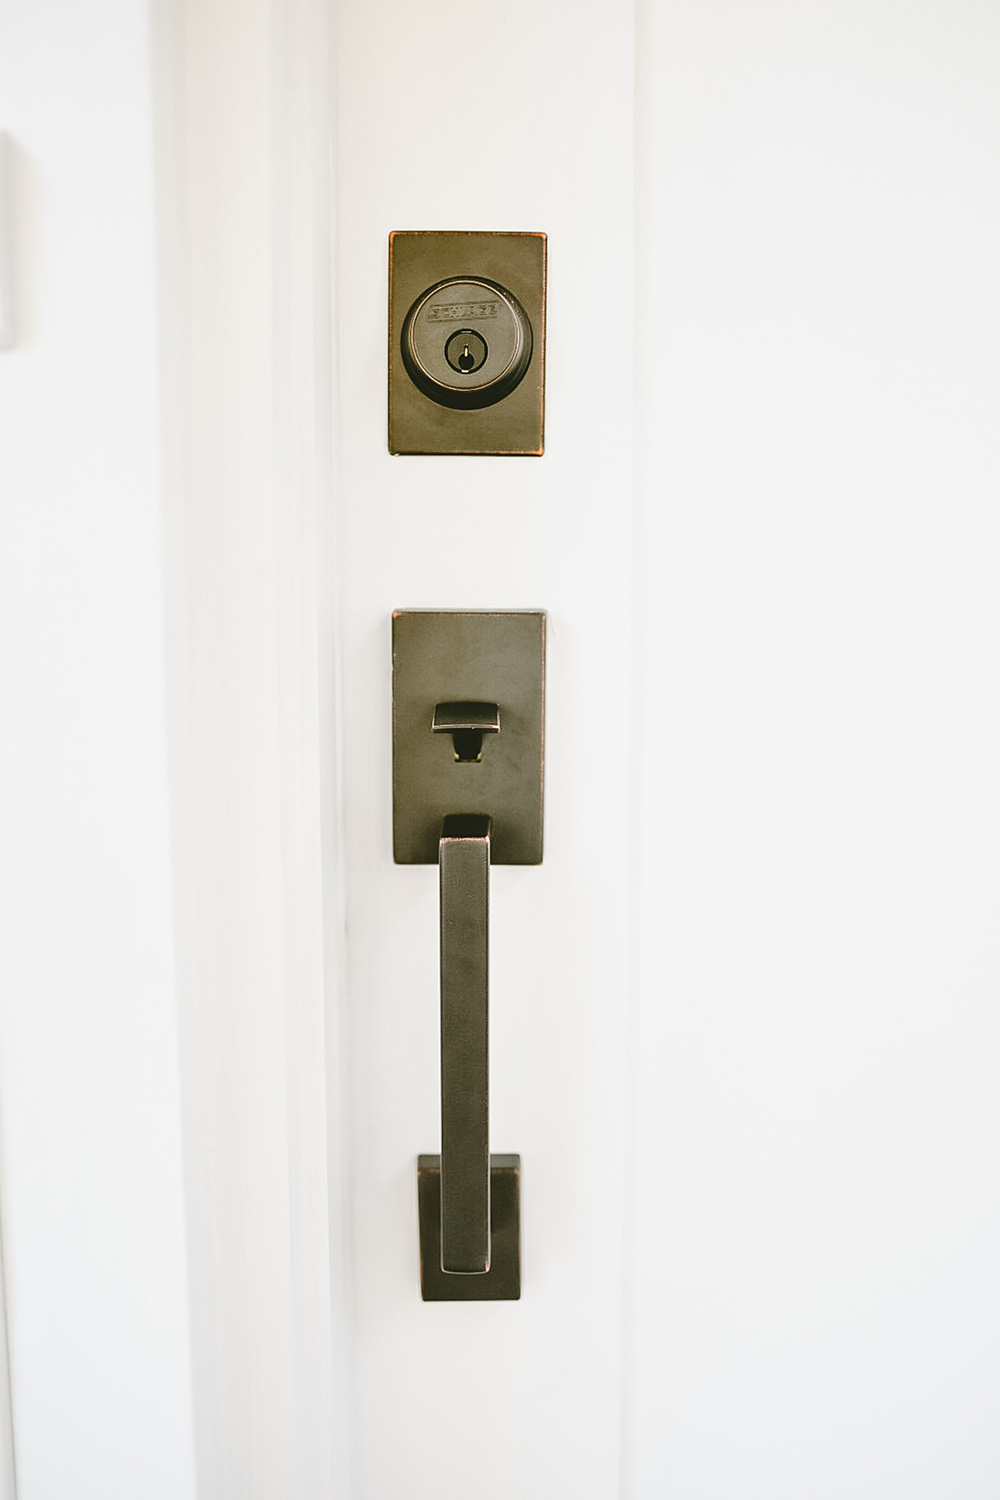 A Schlage door handle on a white door.